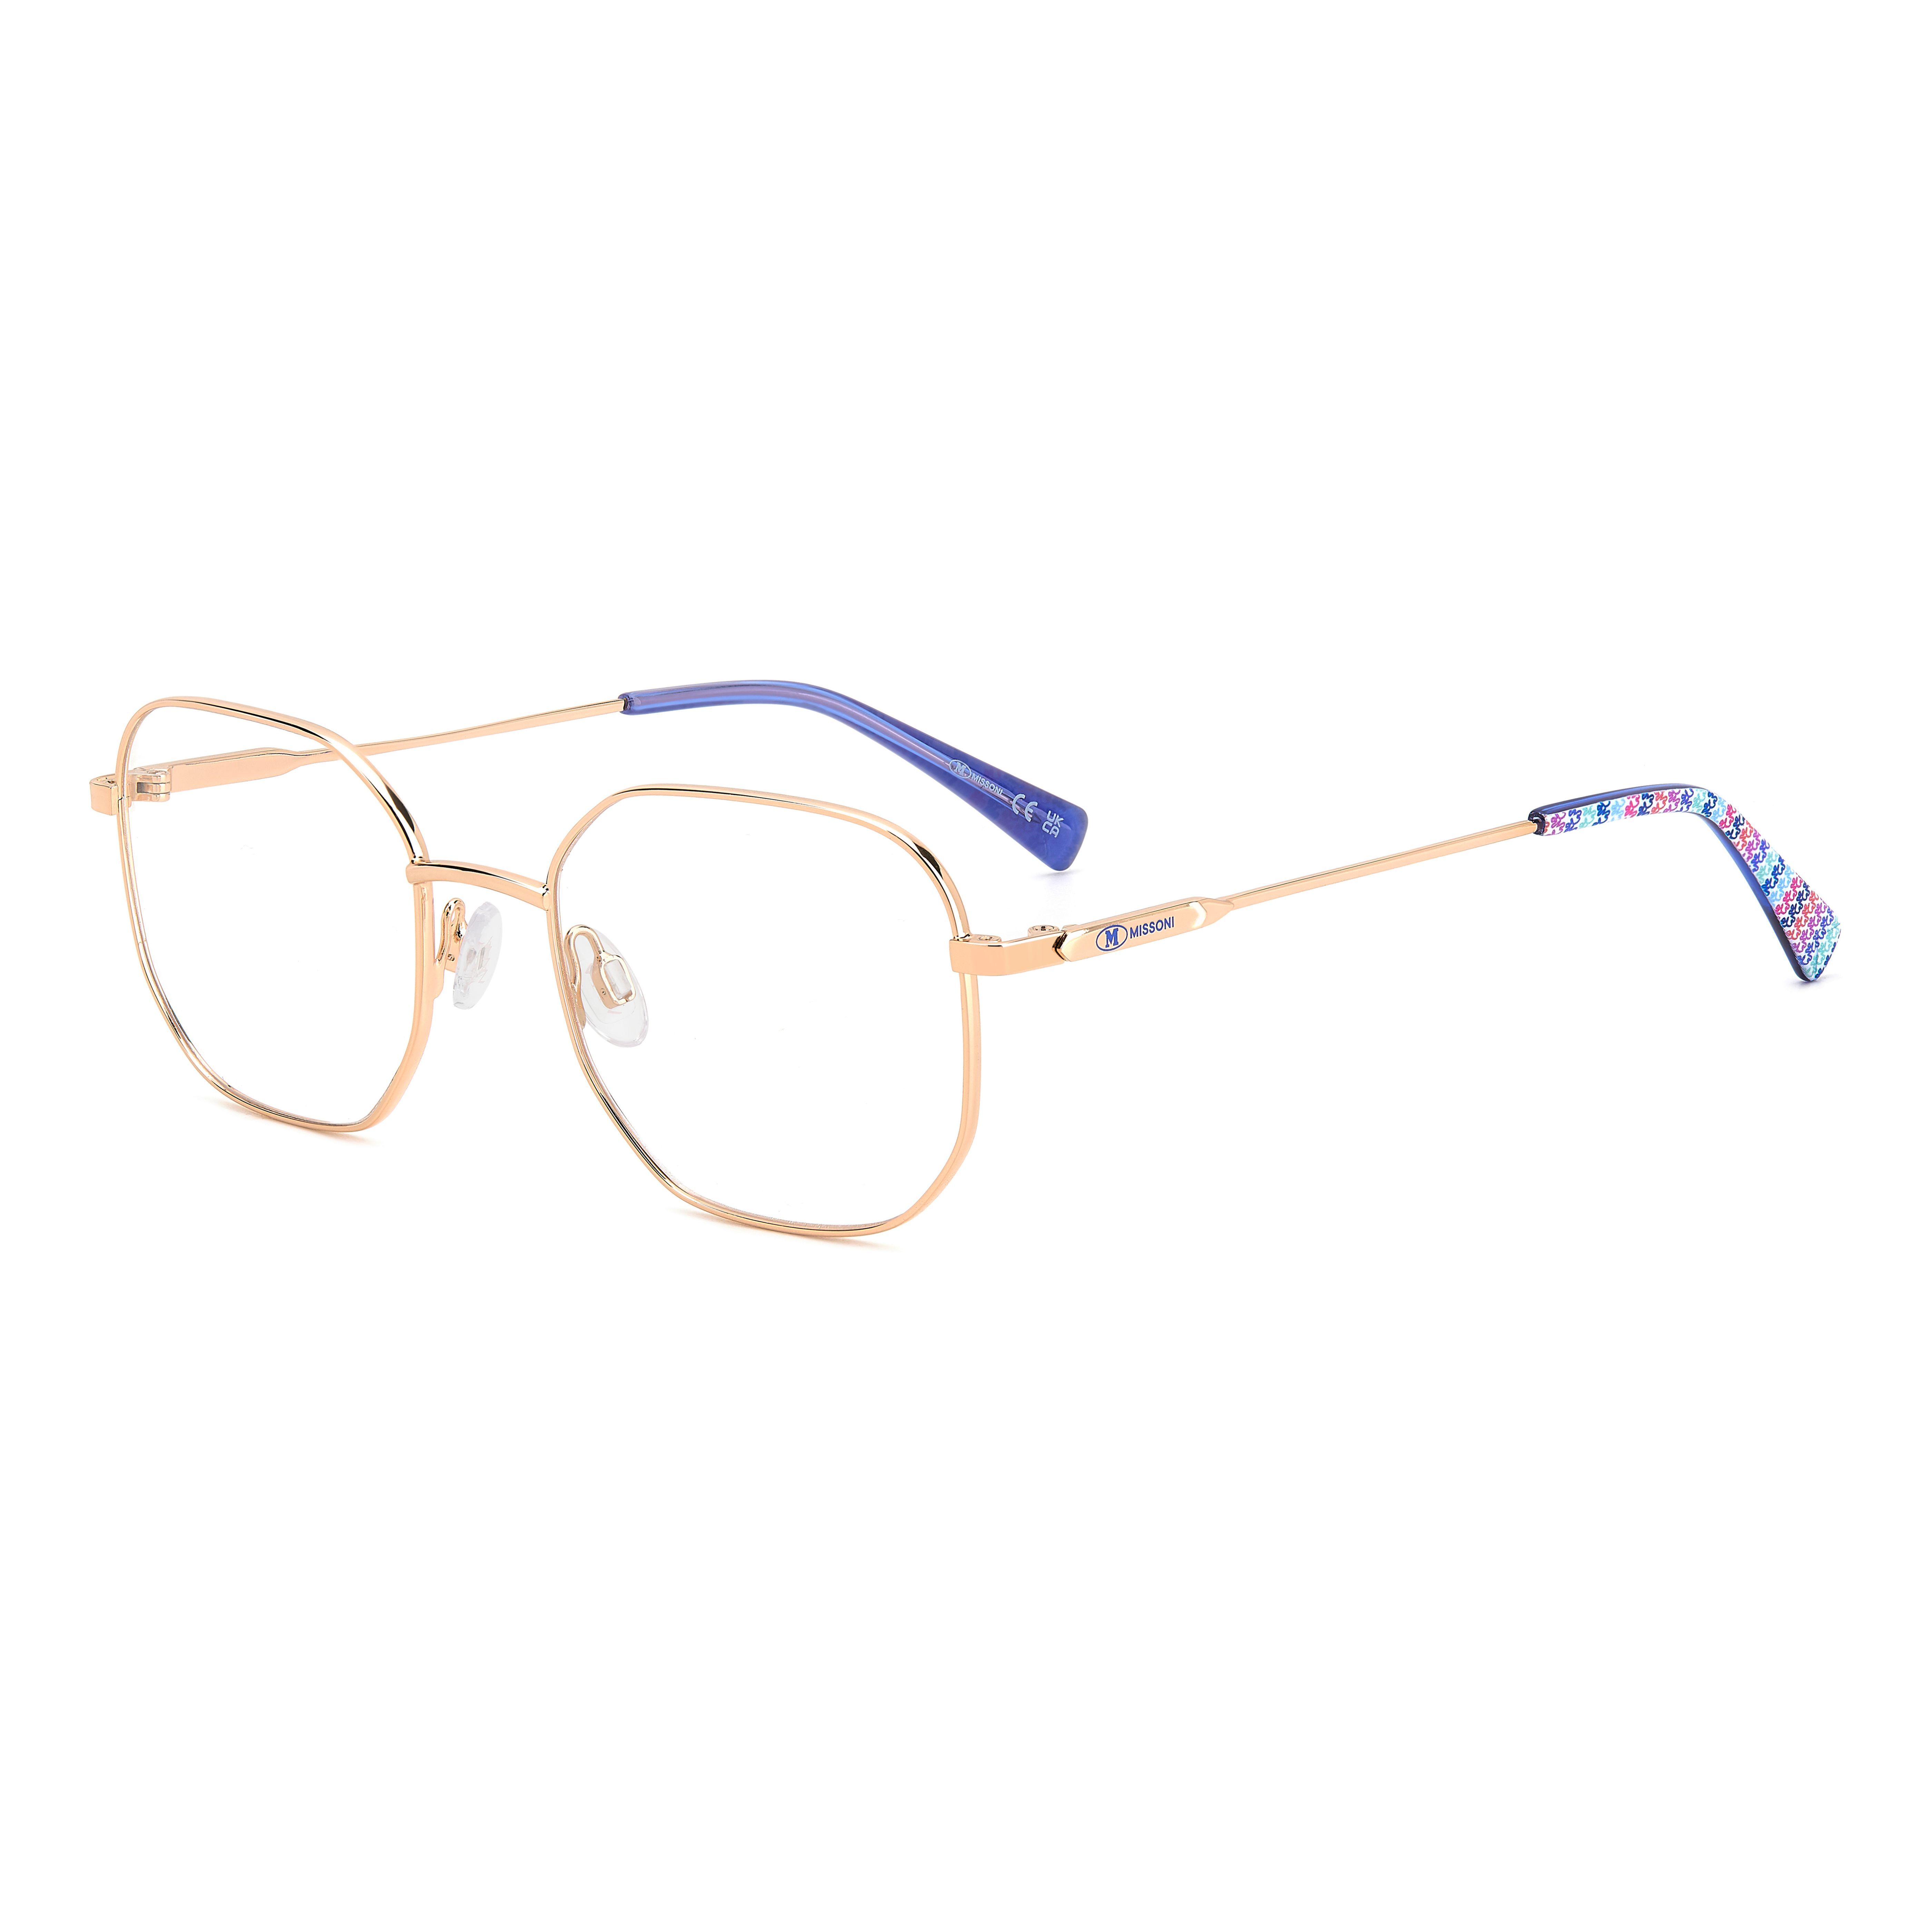 MMI 0185 Square Eyeglasses DDB - size 51